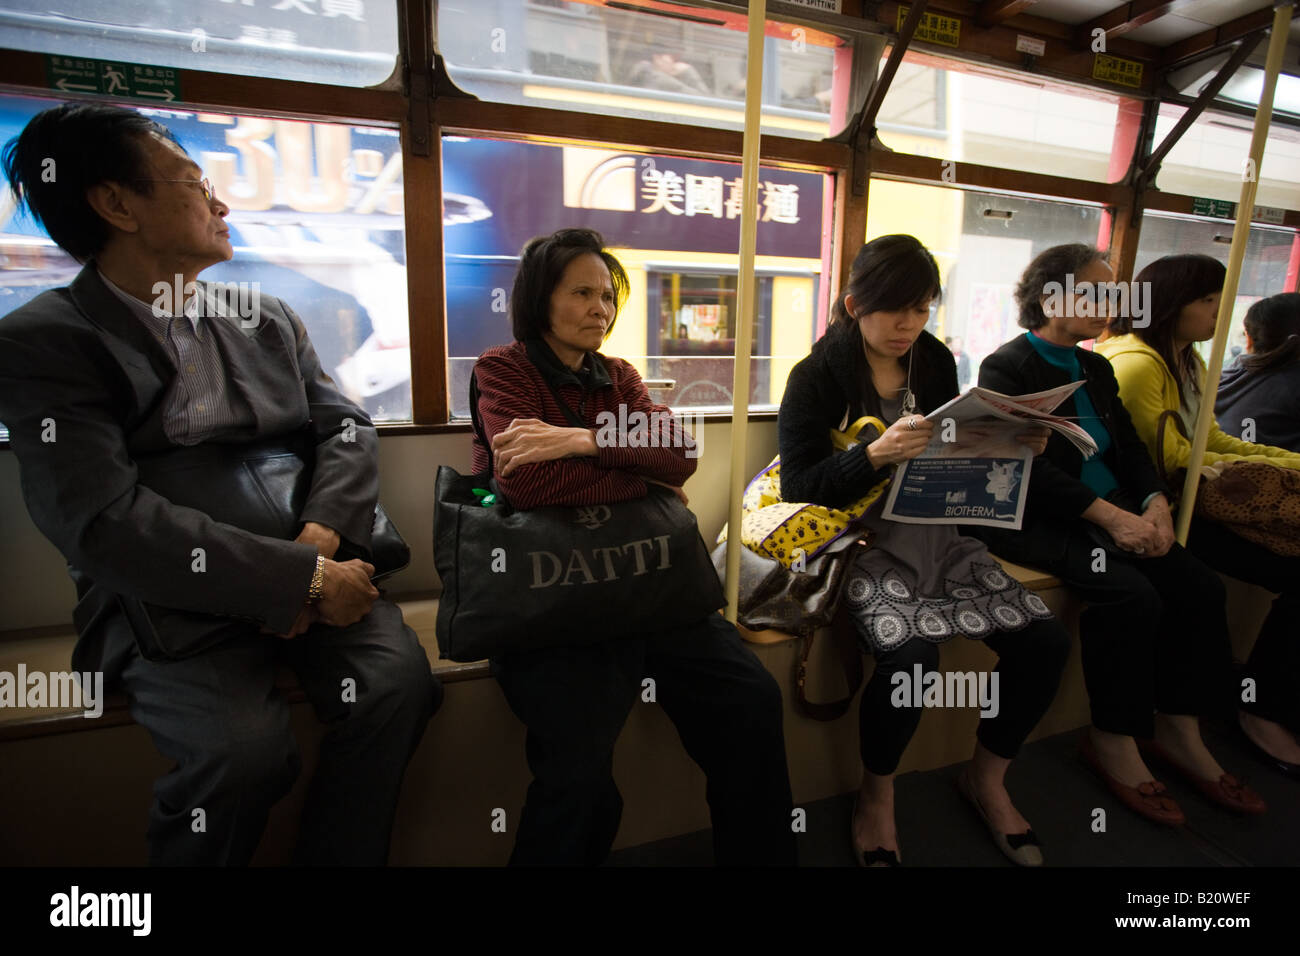 Passagers en tram en vieux quartier chinois traditionnel Des Voeux Road Sheung Wan Hong Kong Chine Banque D'Images